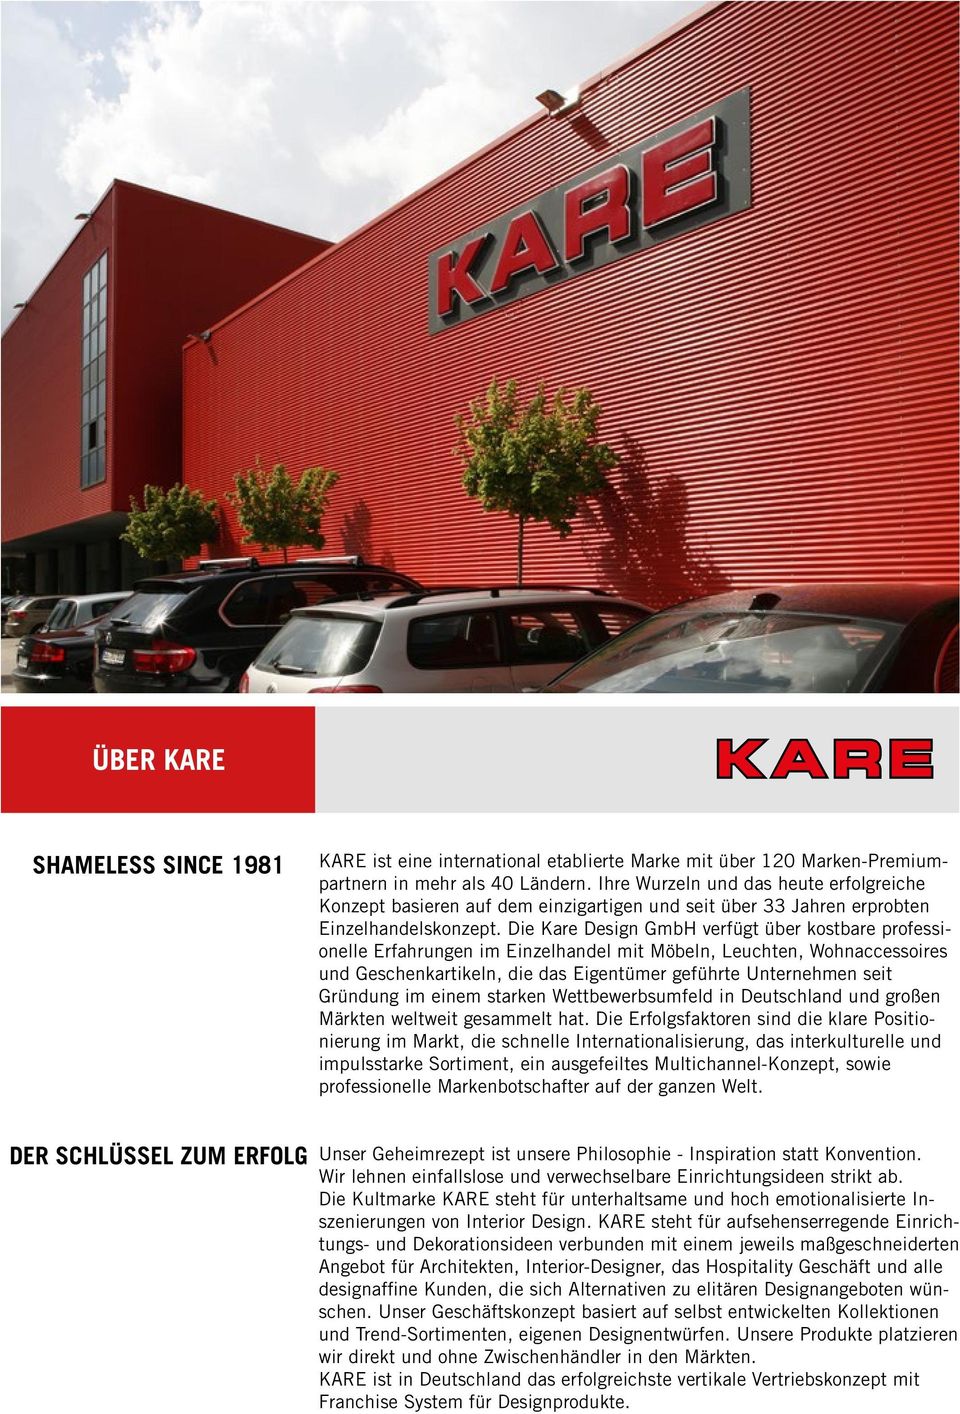 Die Kare Design GmbH verfügt über kostbare professionelle Erfahrungen im Einzelhandel mit Möbeln, Leuchten, Wohnaccessoires und Geschenkartikeln, die das Eigentümer geführte Unternehmen seit Gründung